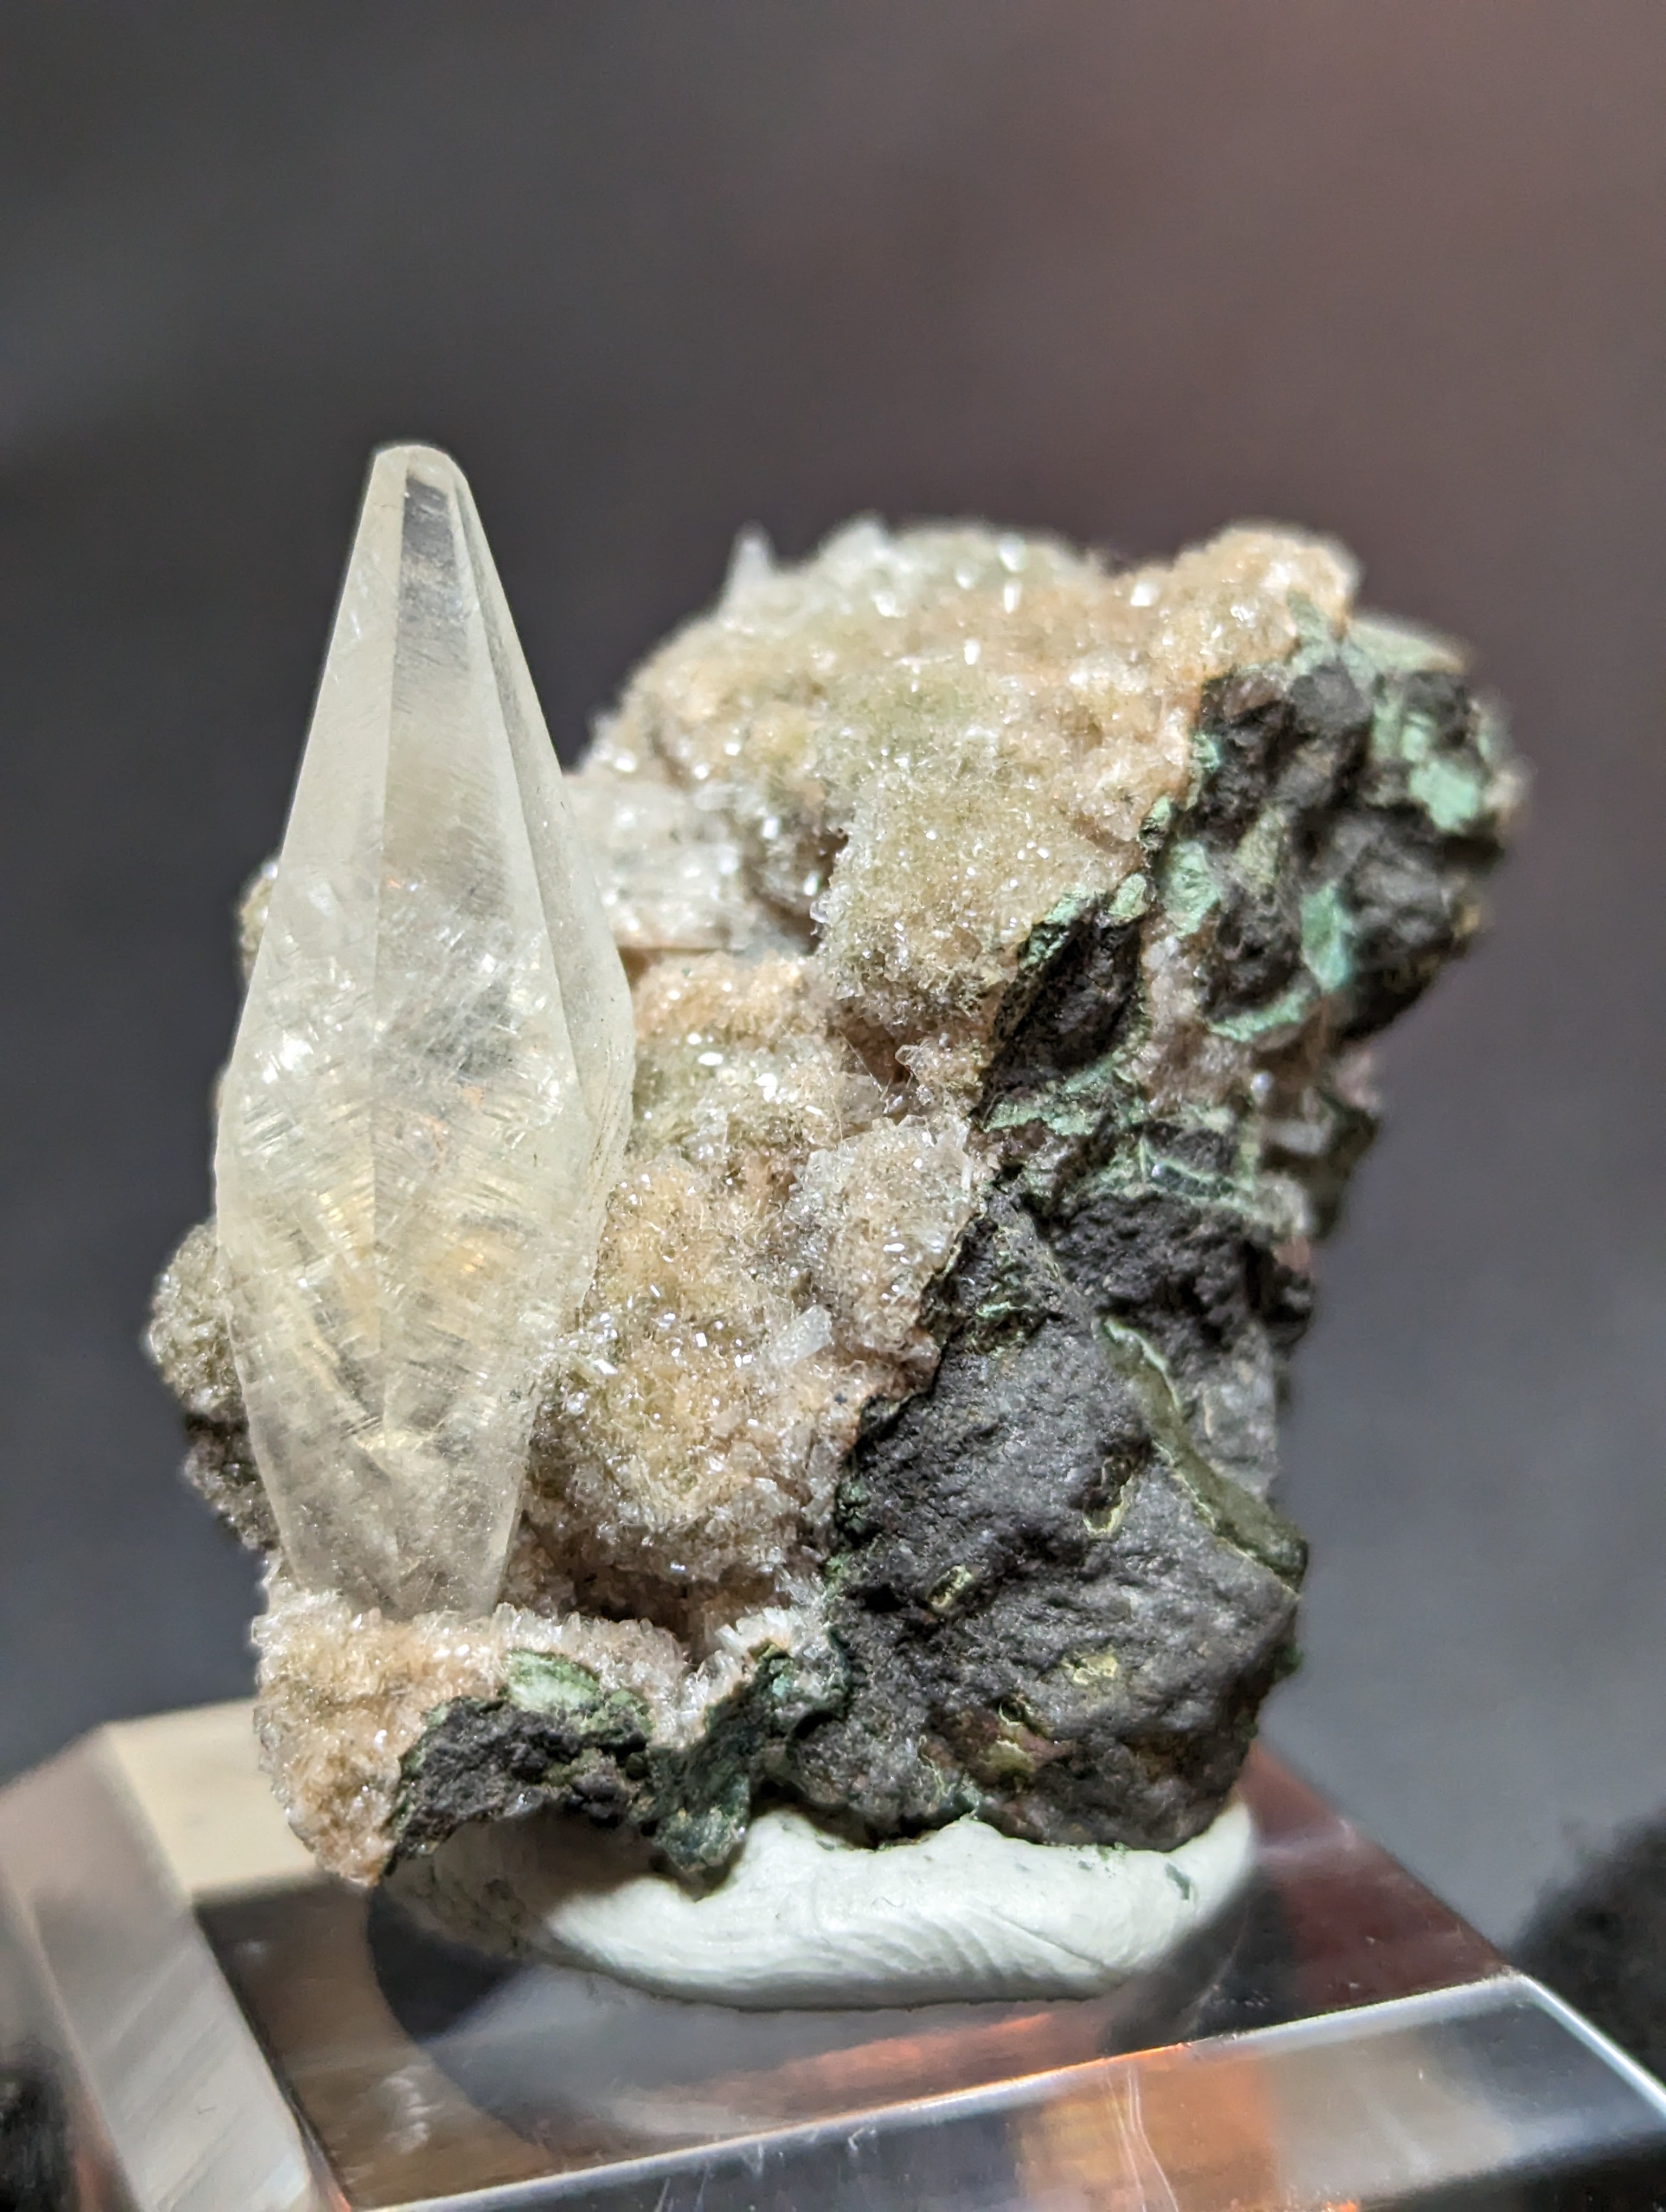 カルサイト(方解石)犬牙状結晶 母岩付き インドマハラシュトラ州 R5